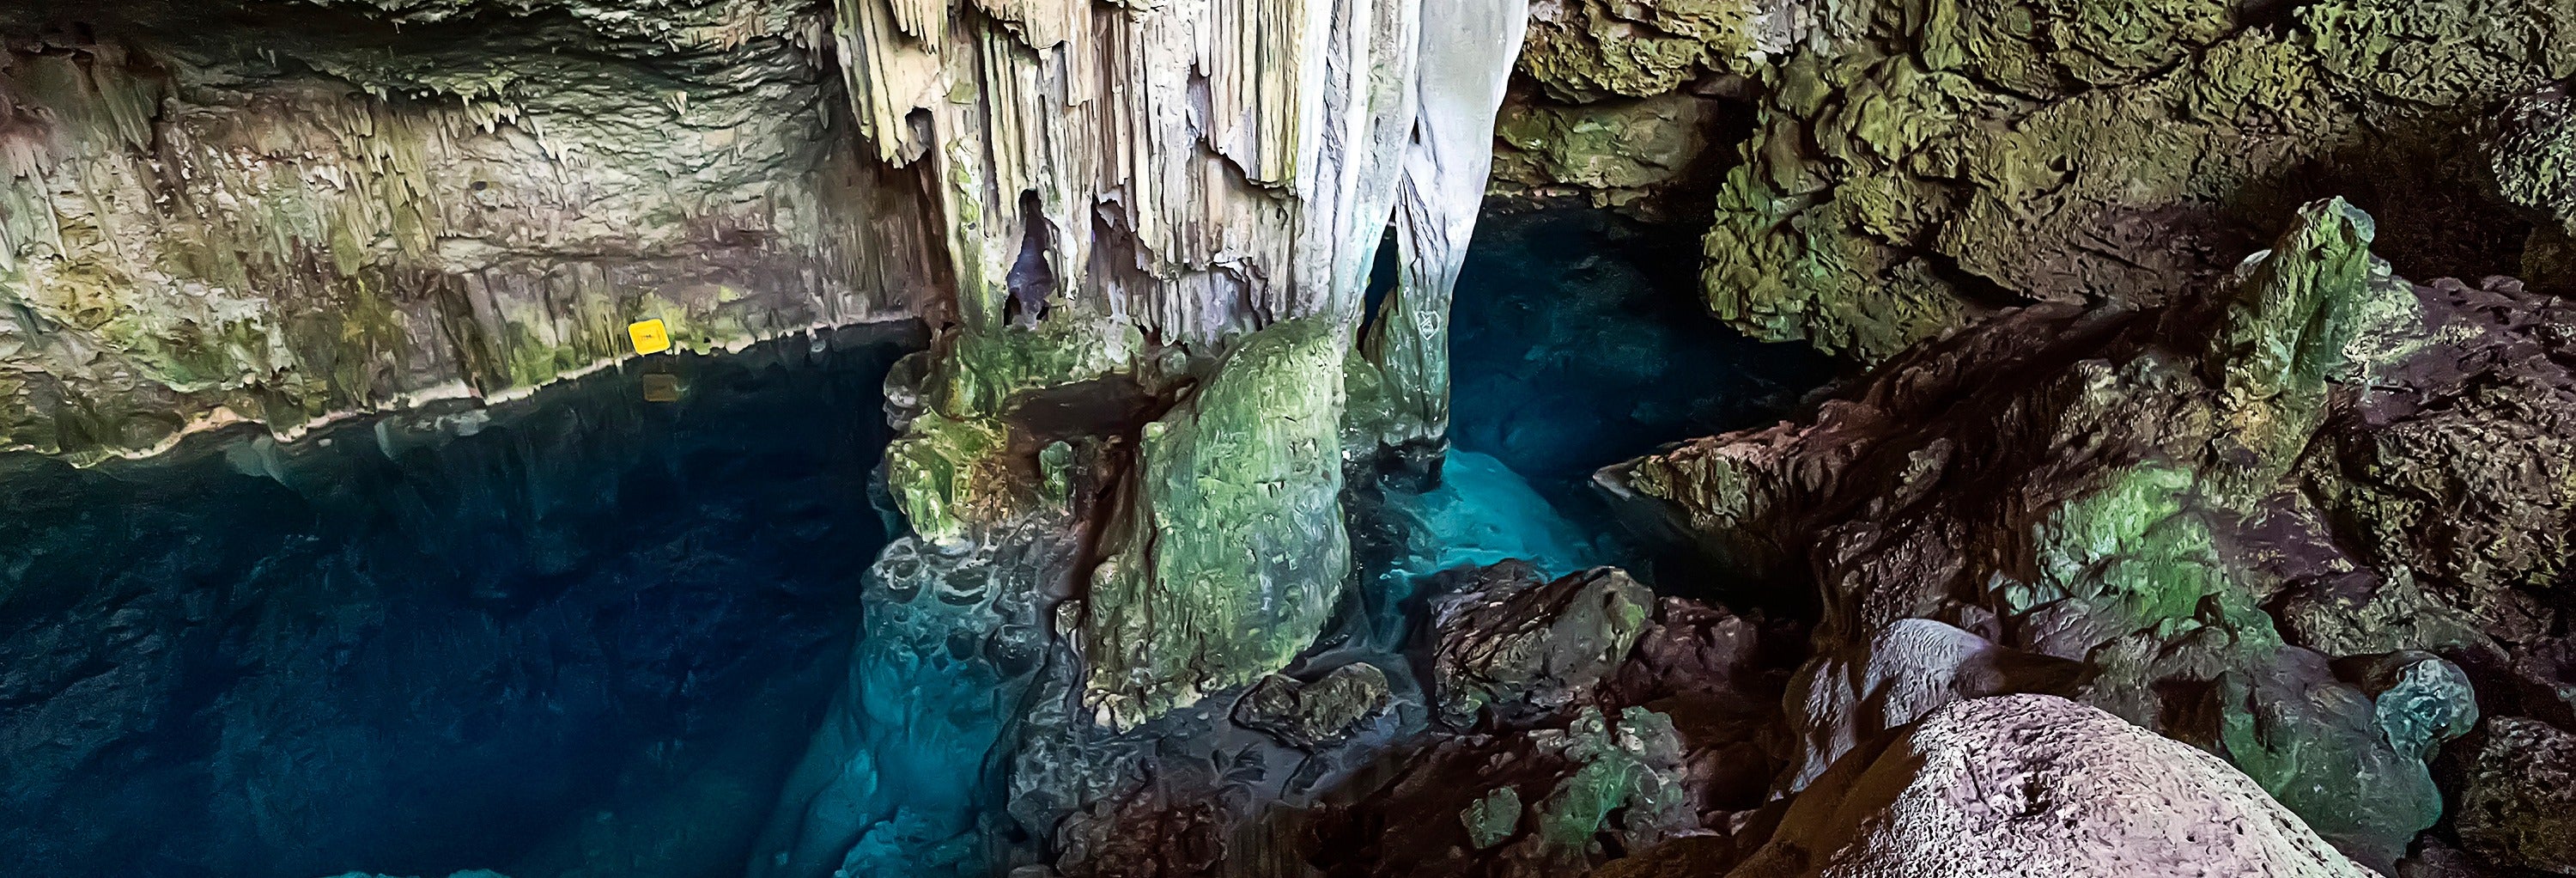 Excursão a Matanzas e grutas de Bellamar